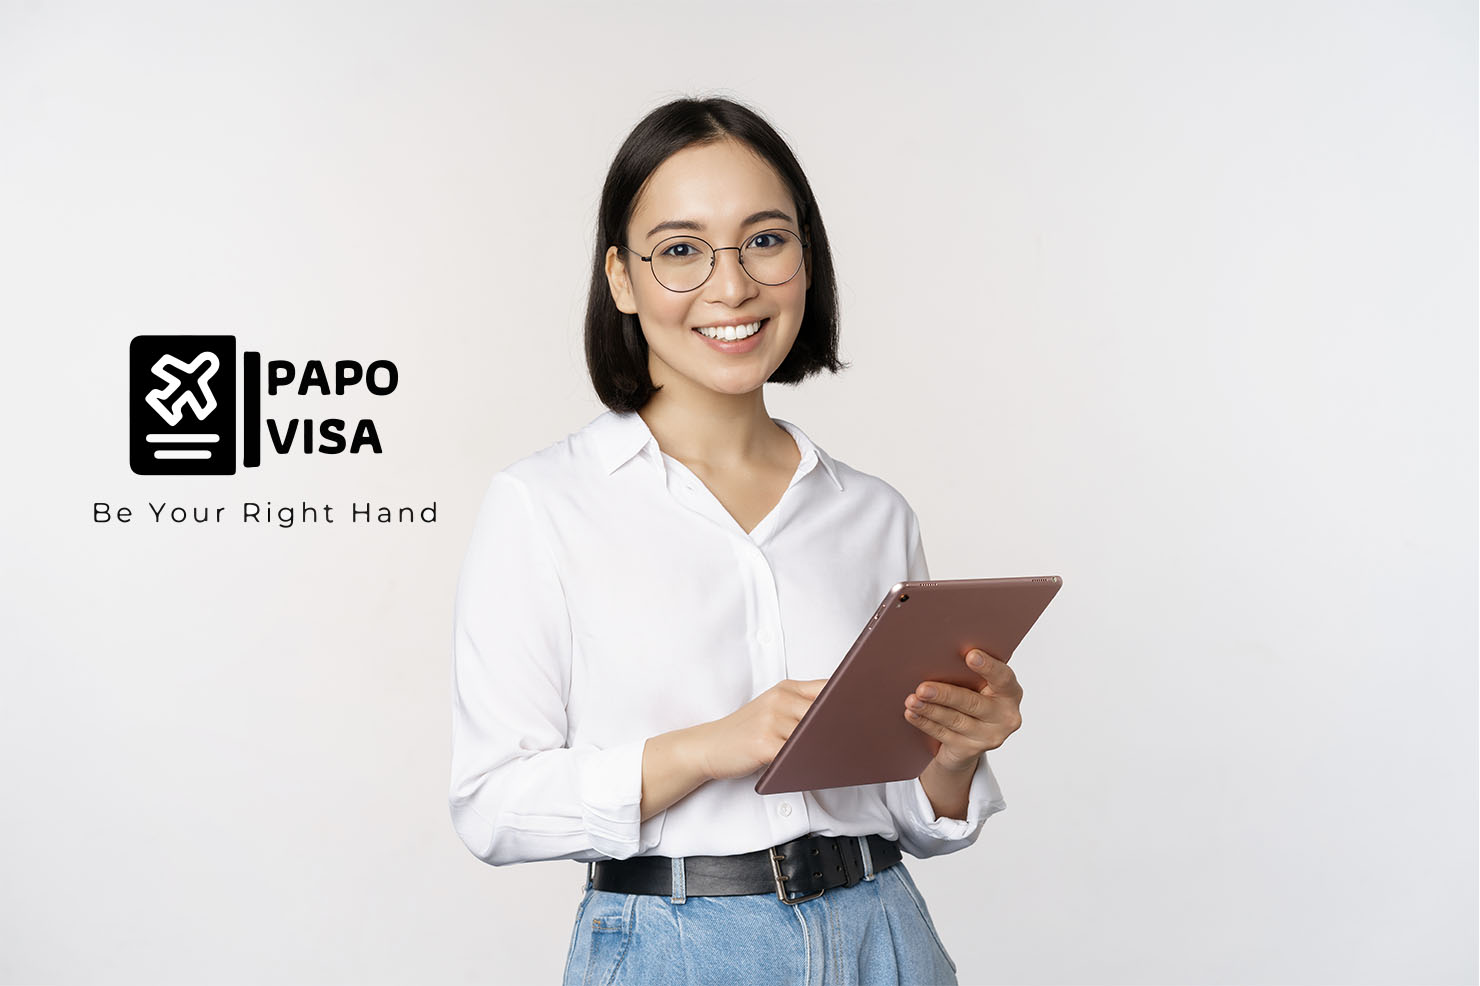 Papovisa dịch vụ làm visa Úc chuyên nghiệp tại TPHCM